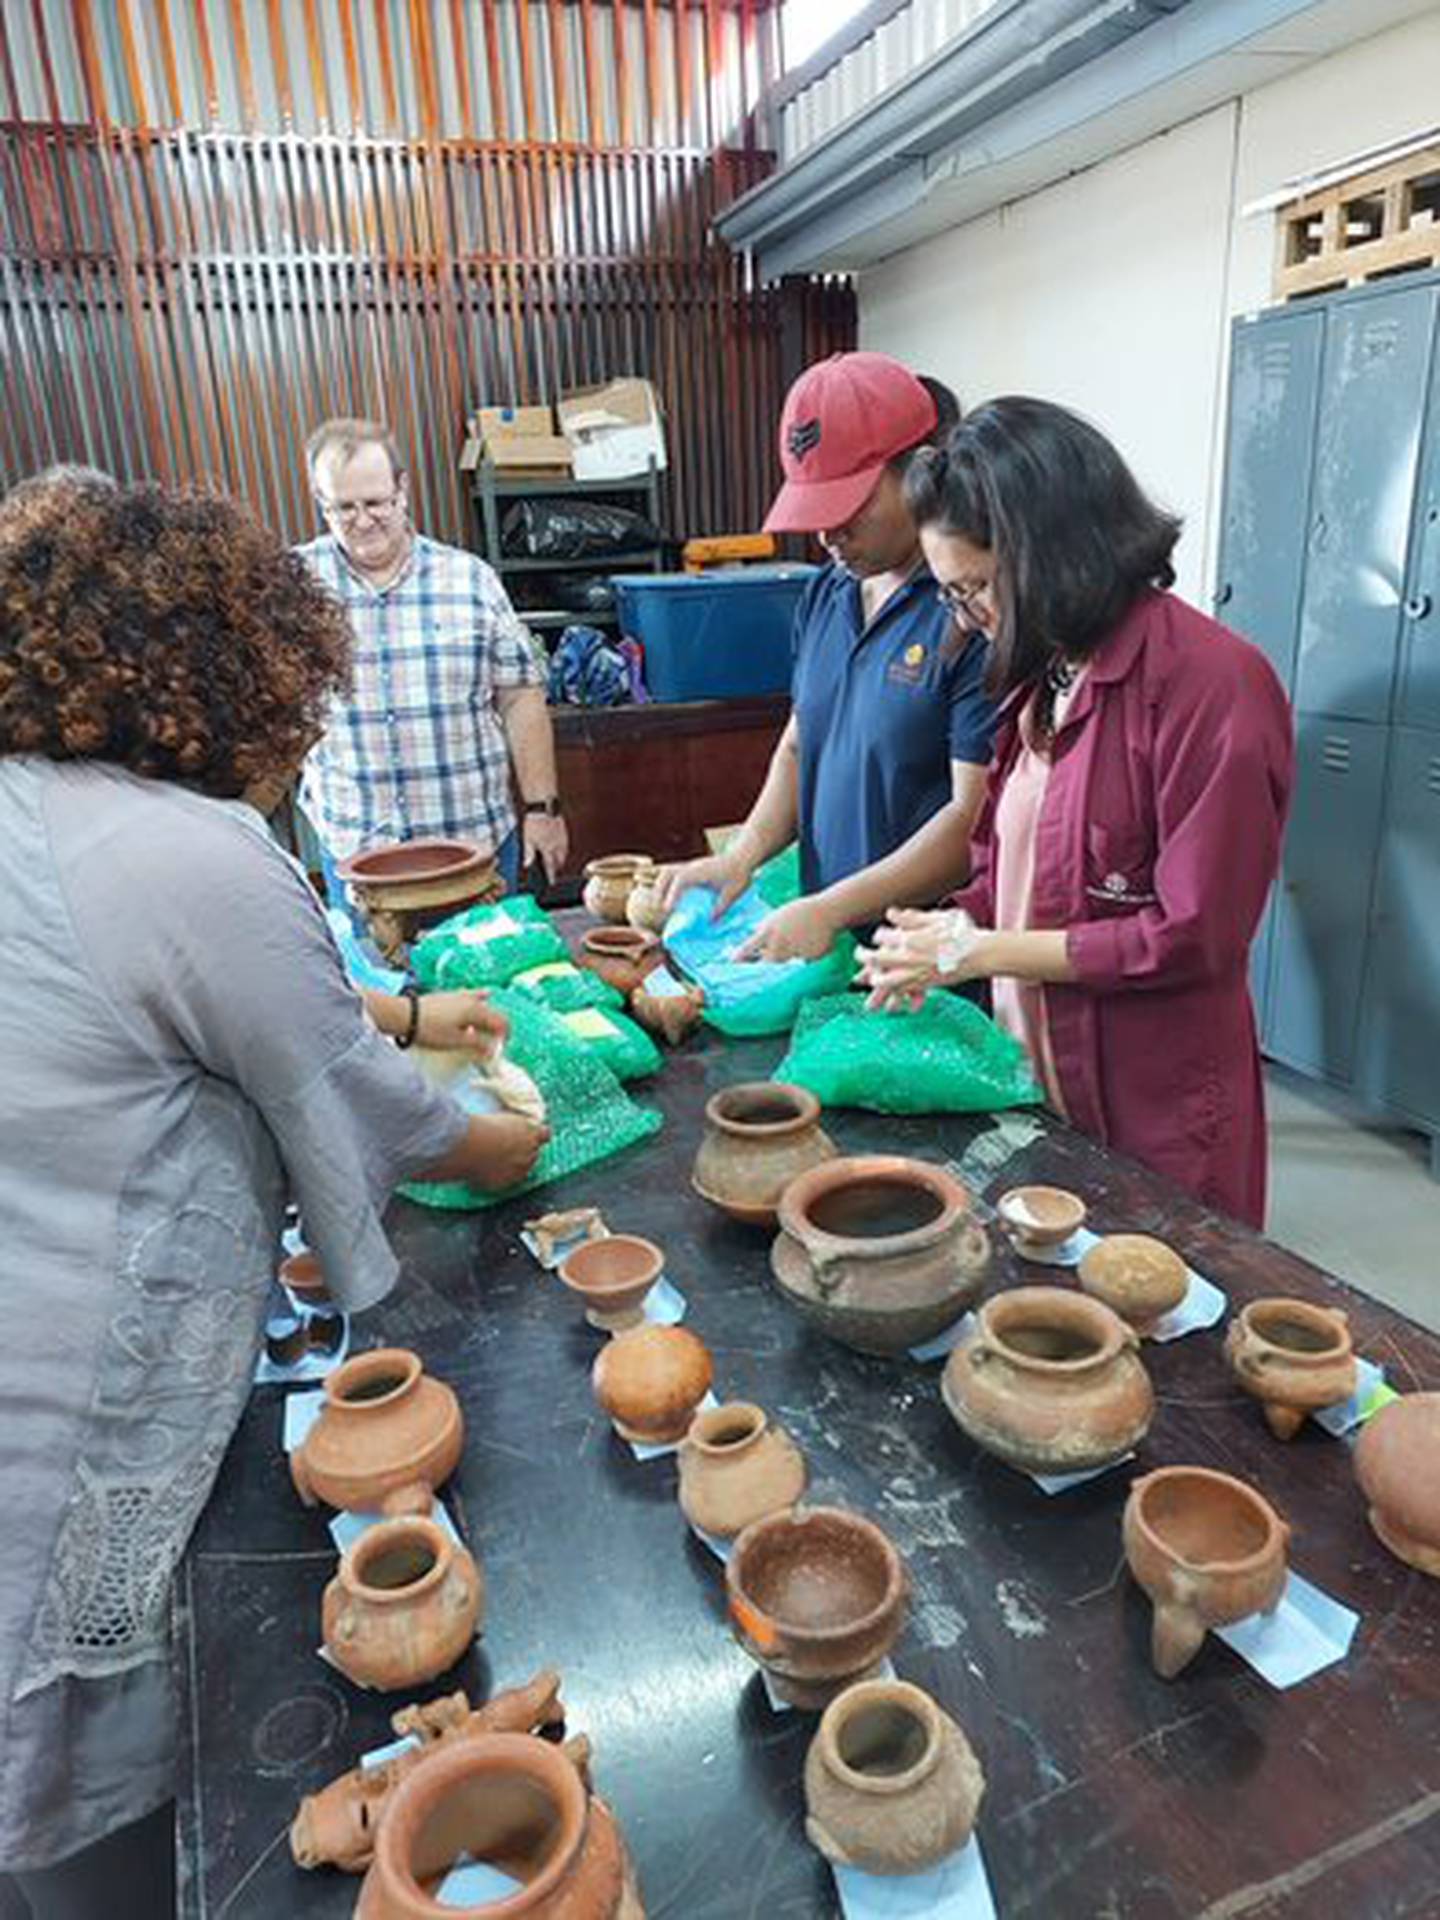 33 piezas precolombinas de cerámica fueron traídas a Costa Rica y devueltas al Museo Nacional este martes 13 de diciembre. Se trata de un cargamento que desde hace casi 10 años estaban en una bóveda del Banco BICSA, bajo la custodia del consulado de Costa Rica en Miami a la espera de repatriarlas